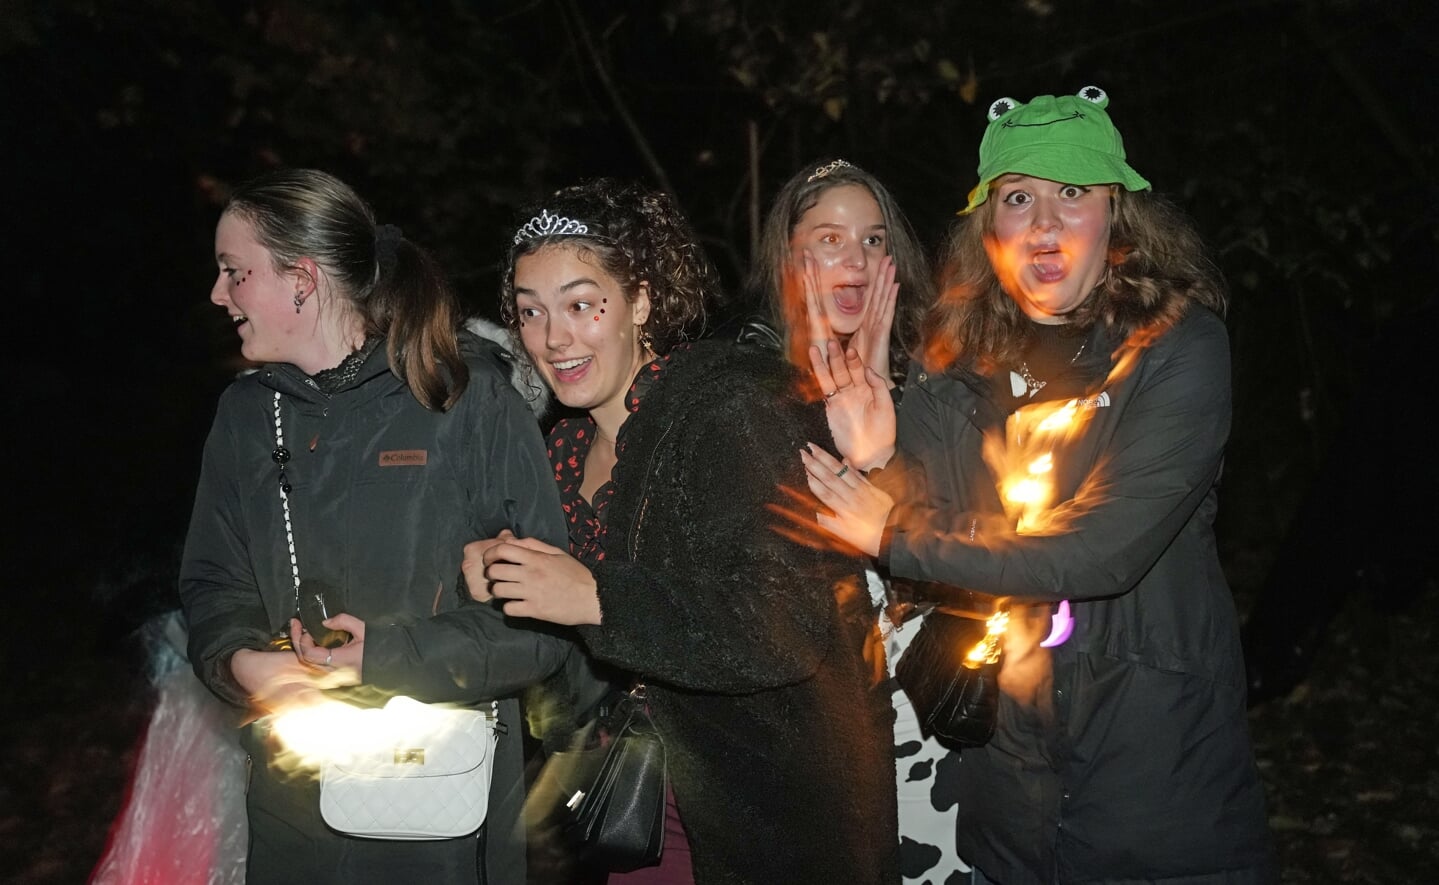 De halloweentocht in Gemonde trok zaterdagavond zo'n 120 kinderen. Er werd flink gegriezeld in de bossen en straten. 